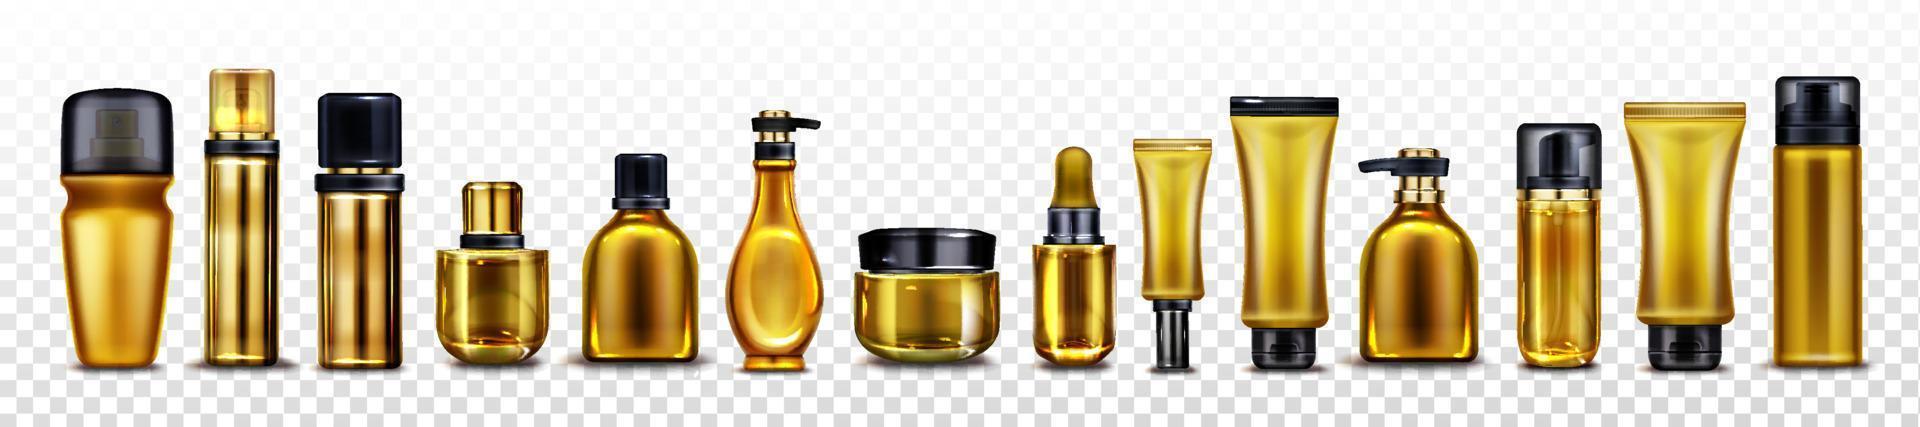 maquete vetorial de frascos e tubos de cosméticos dourados vetor